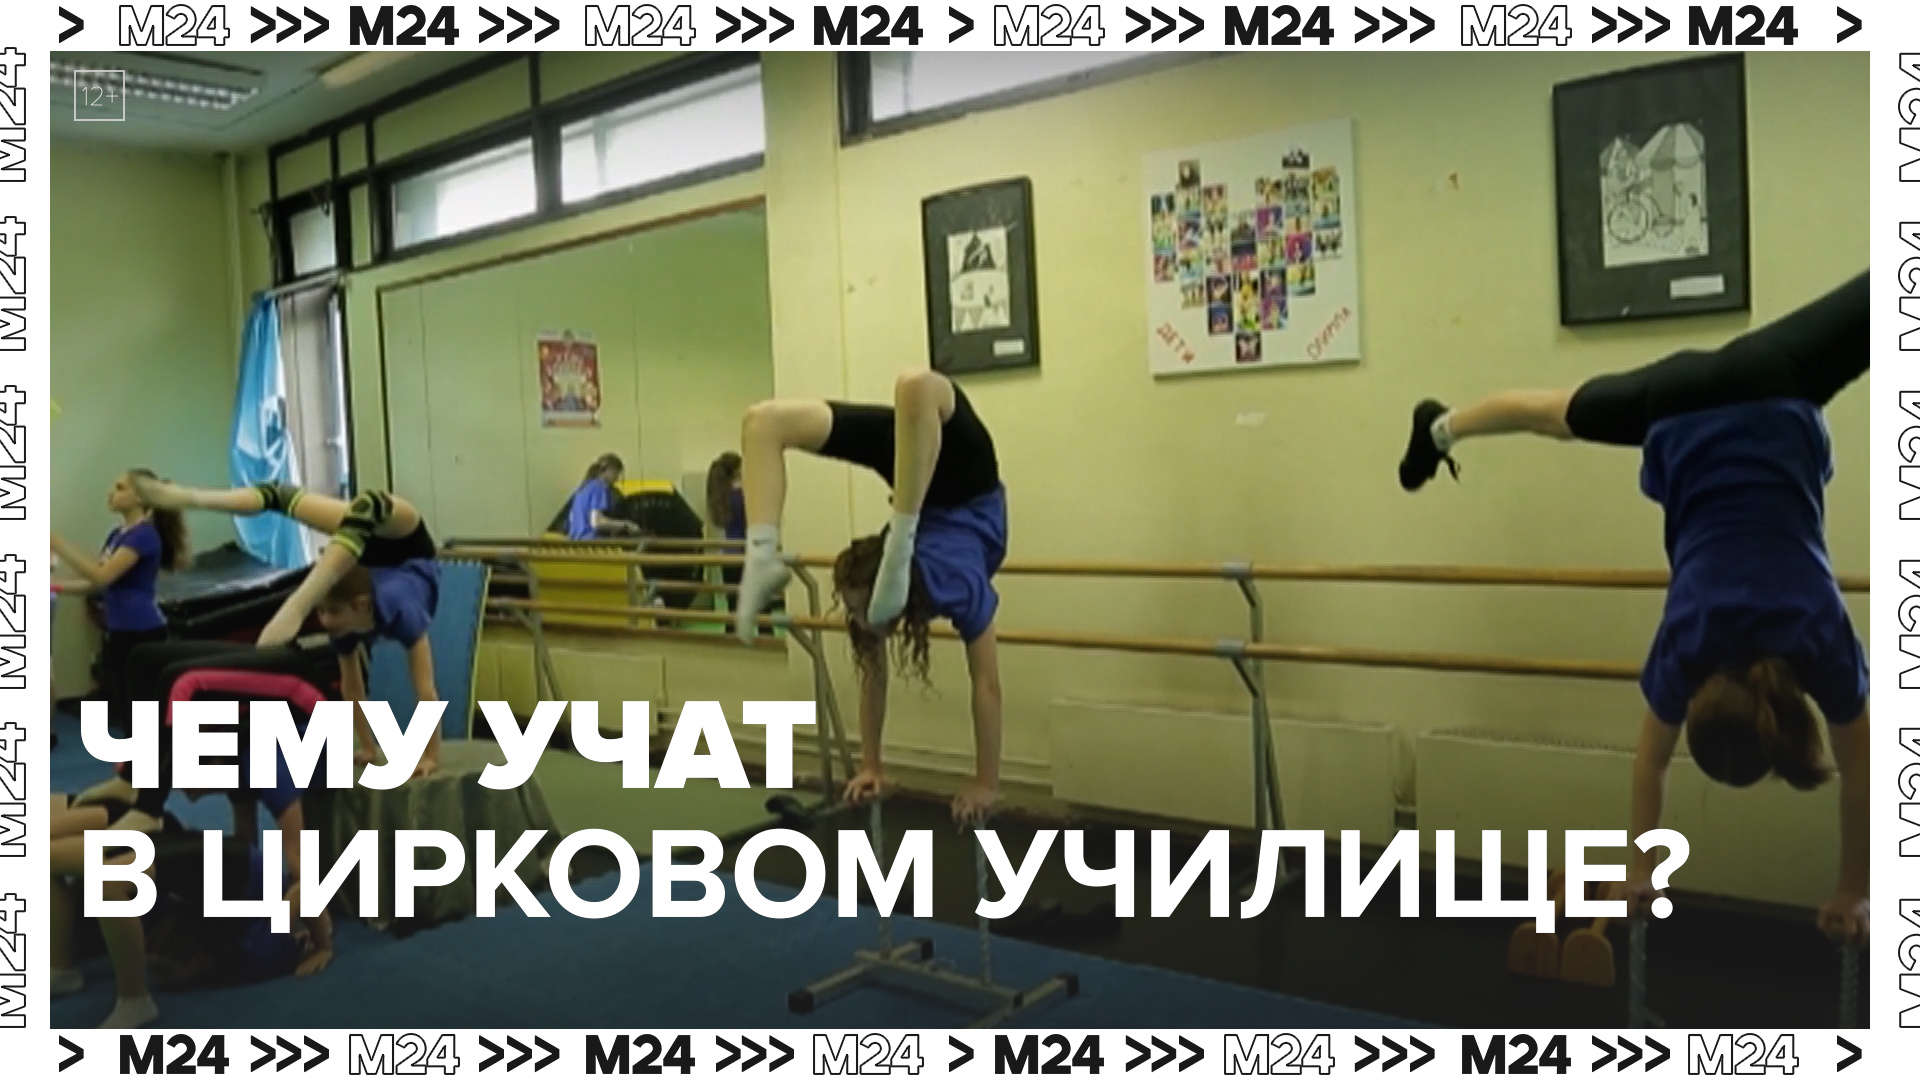 Чему учат в цирковом училище? — Москва24